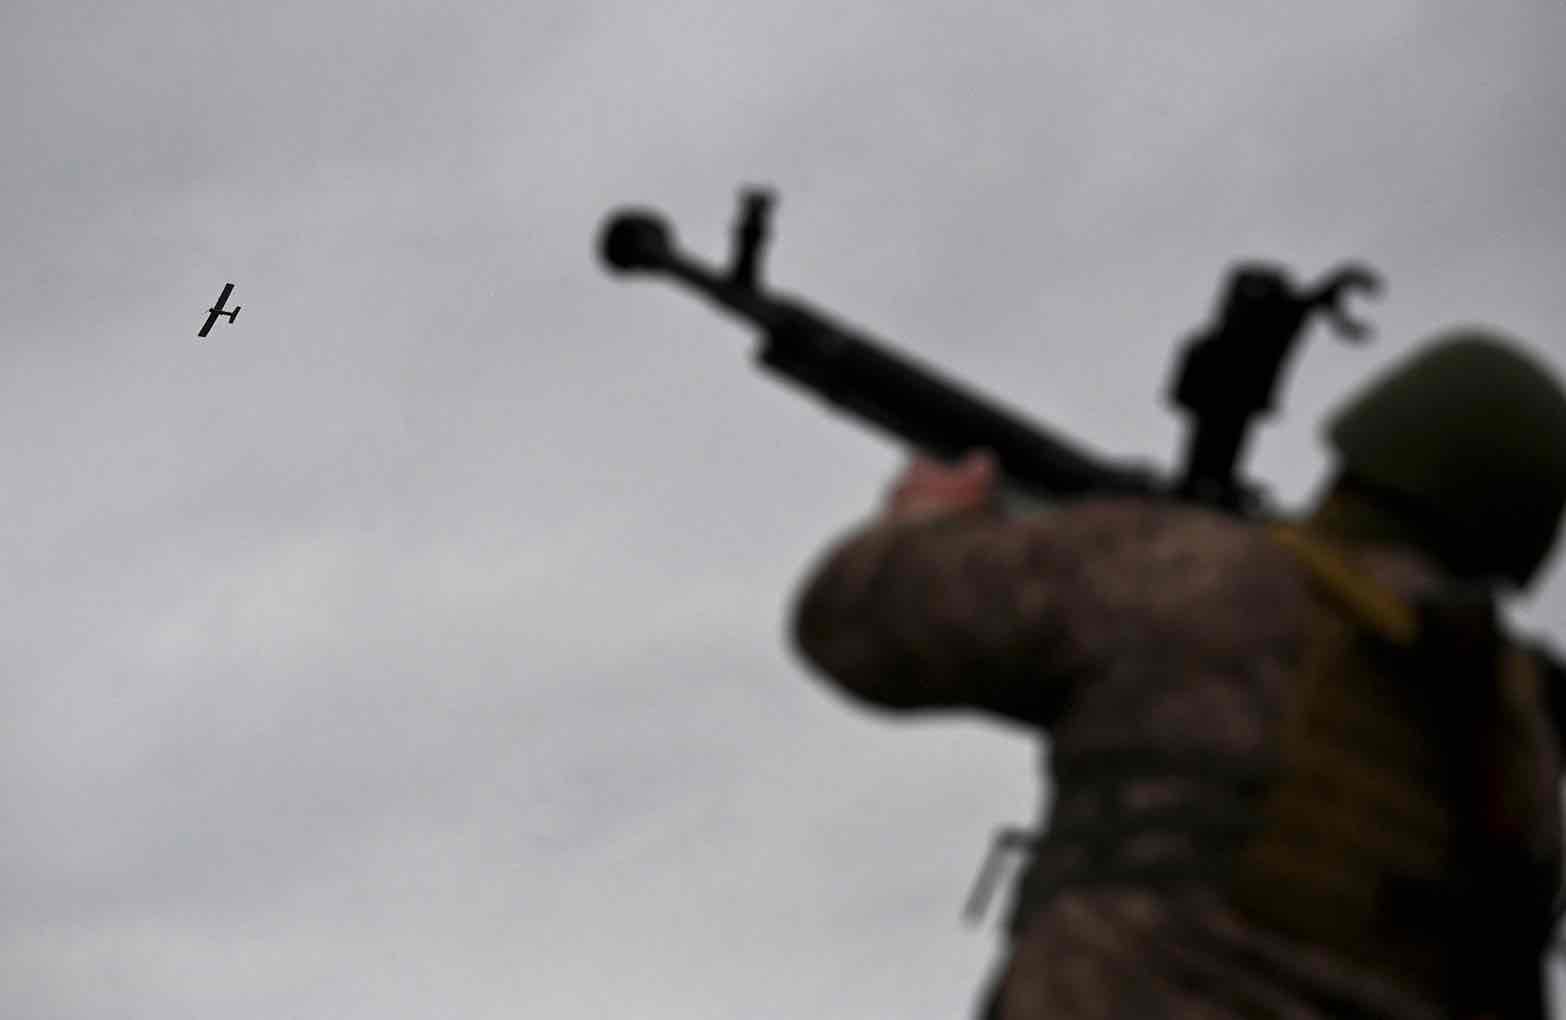 A Ukrainian serviceman aims a machine gun as a drone flies